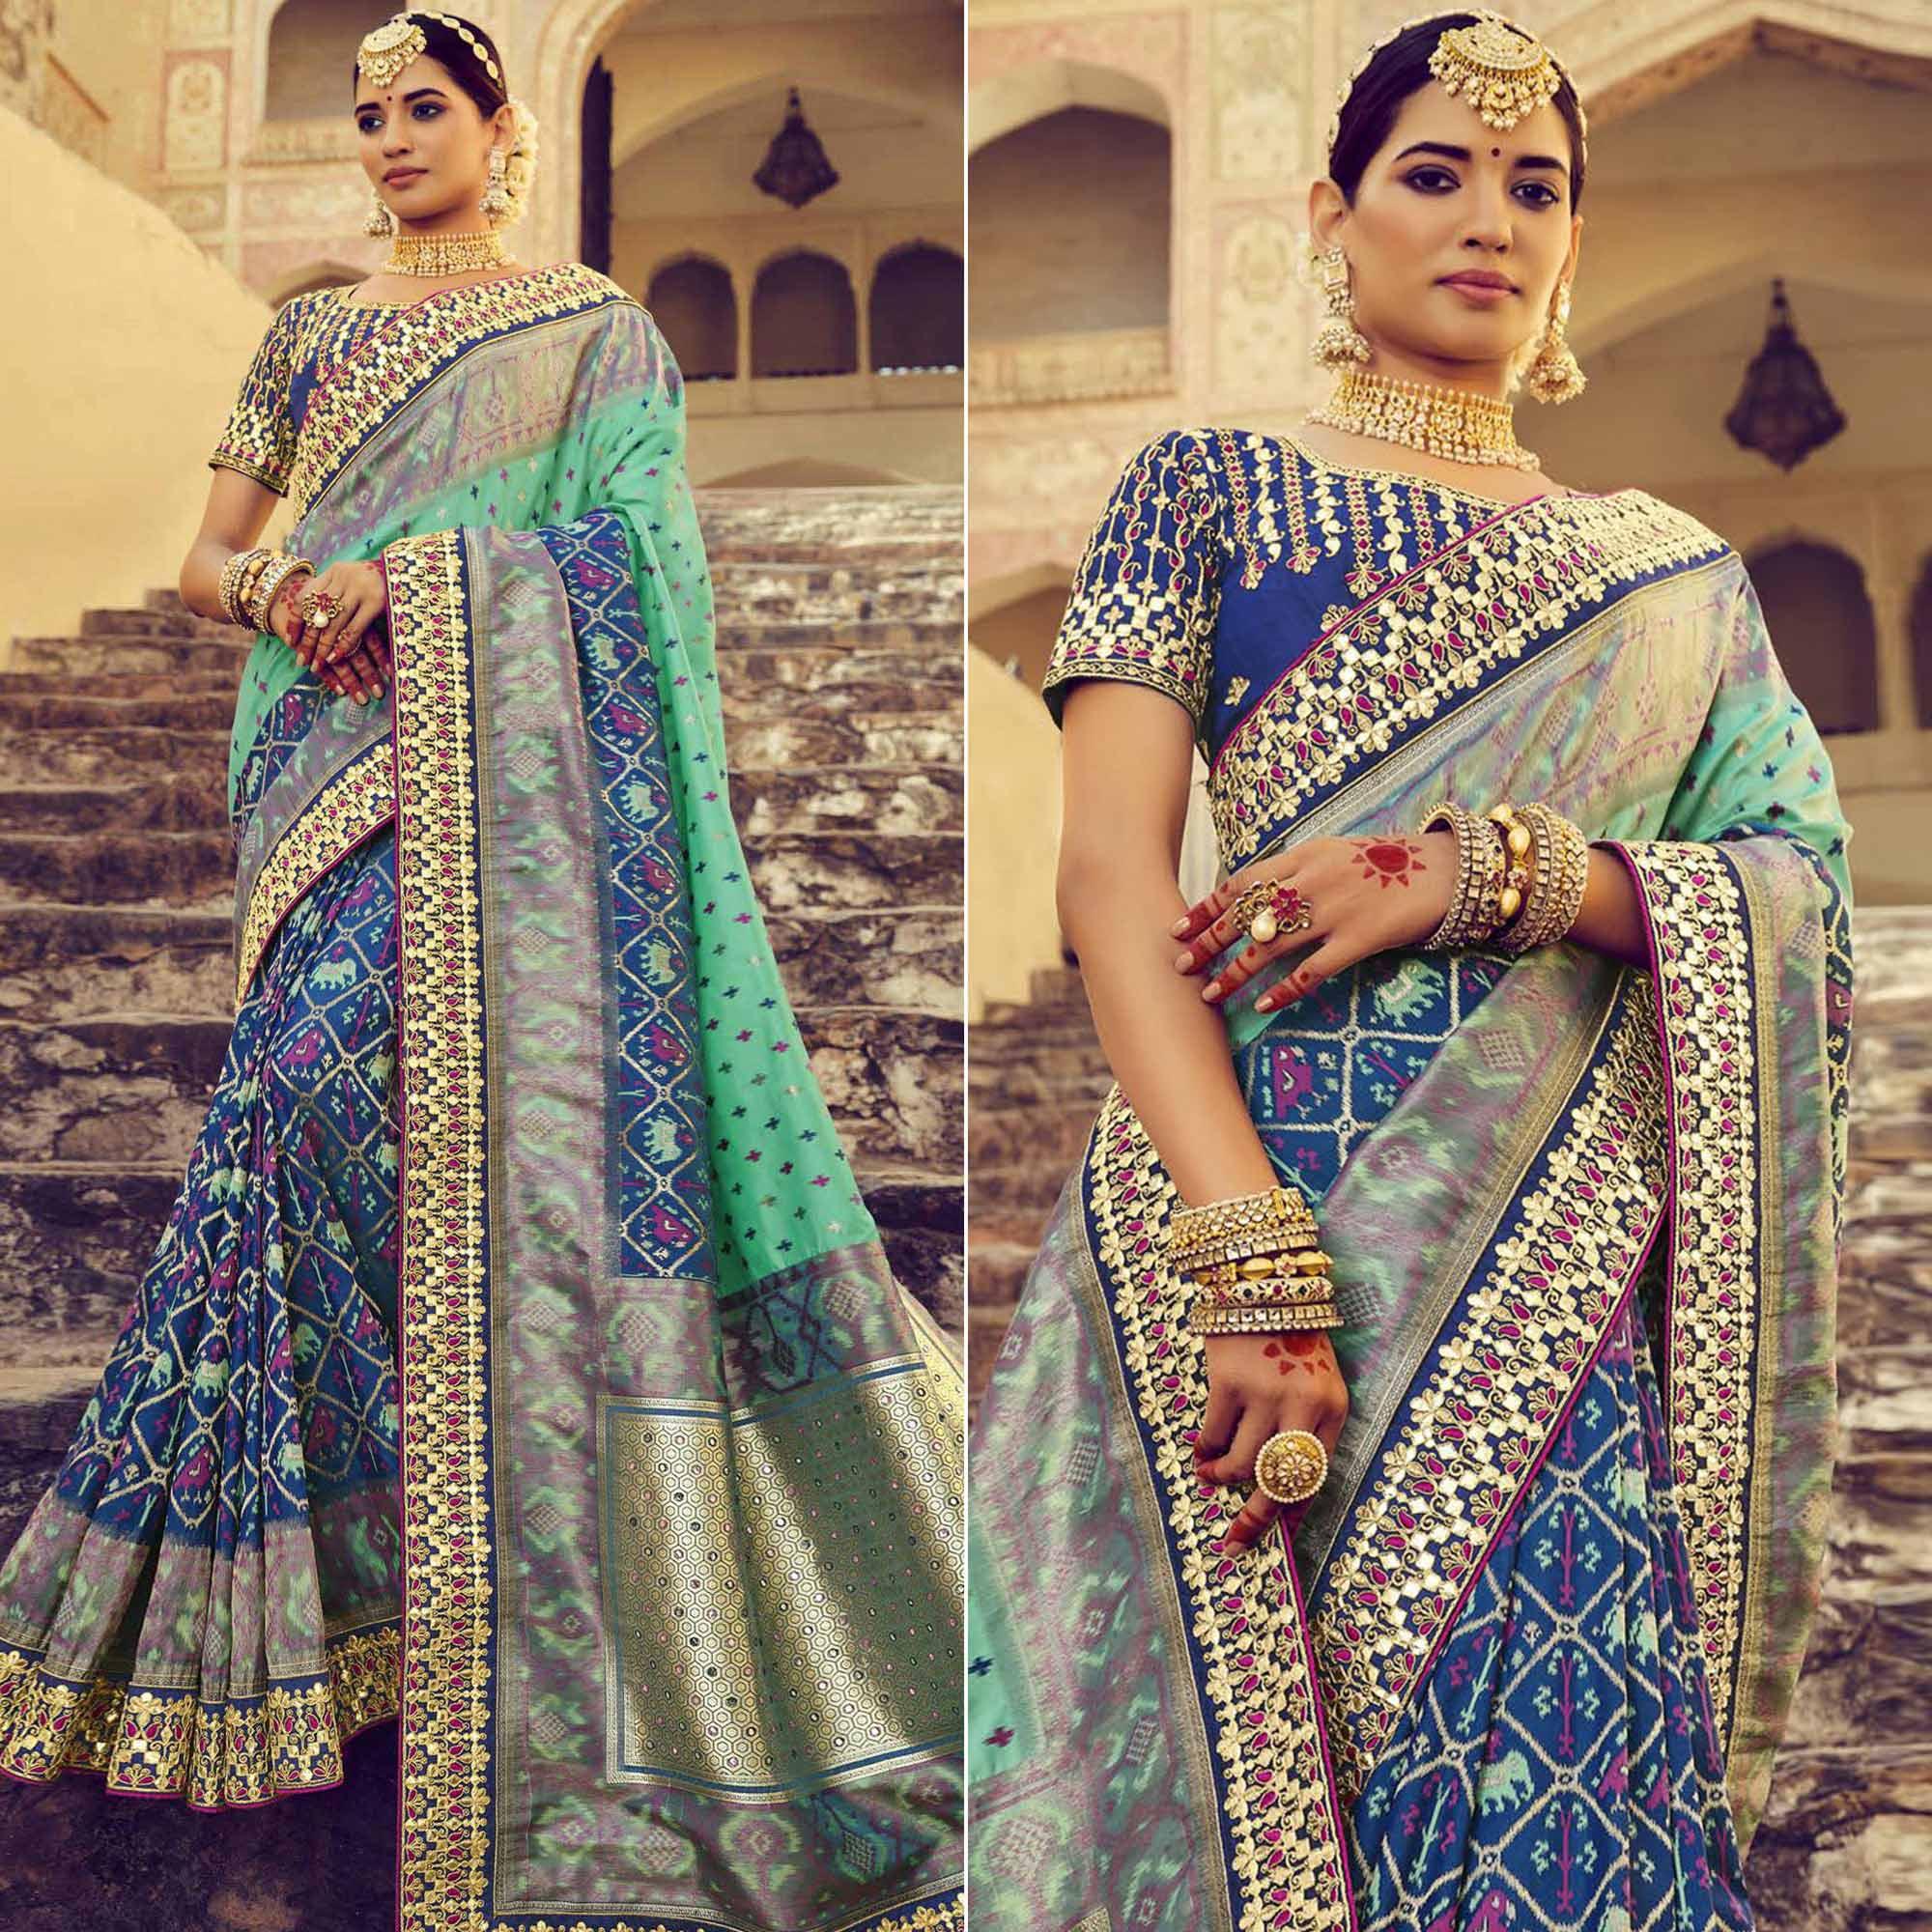 Blue & Turquoise Wedding Wear Resham With Embellished Silk Patola Saree - Peachmode